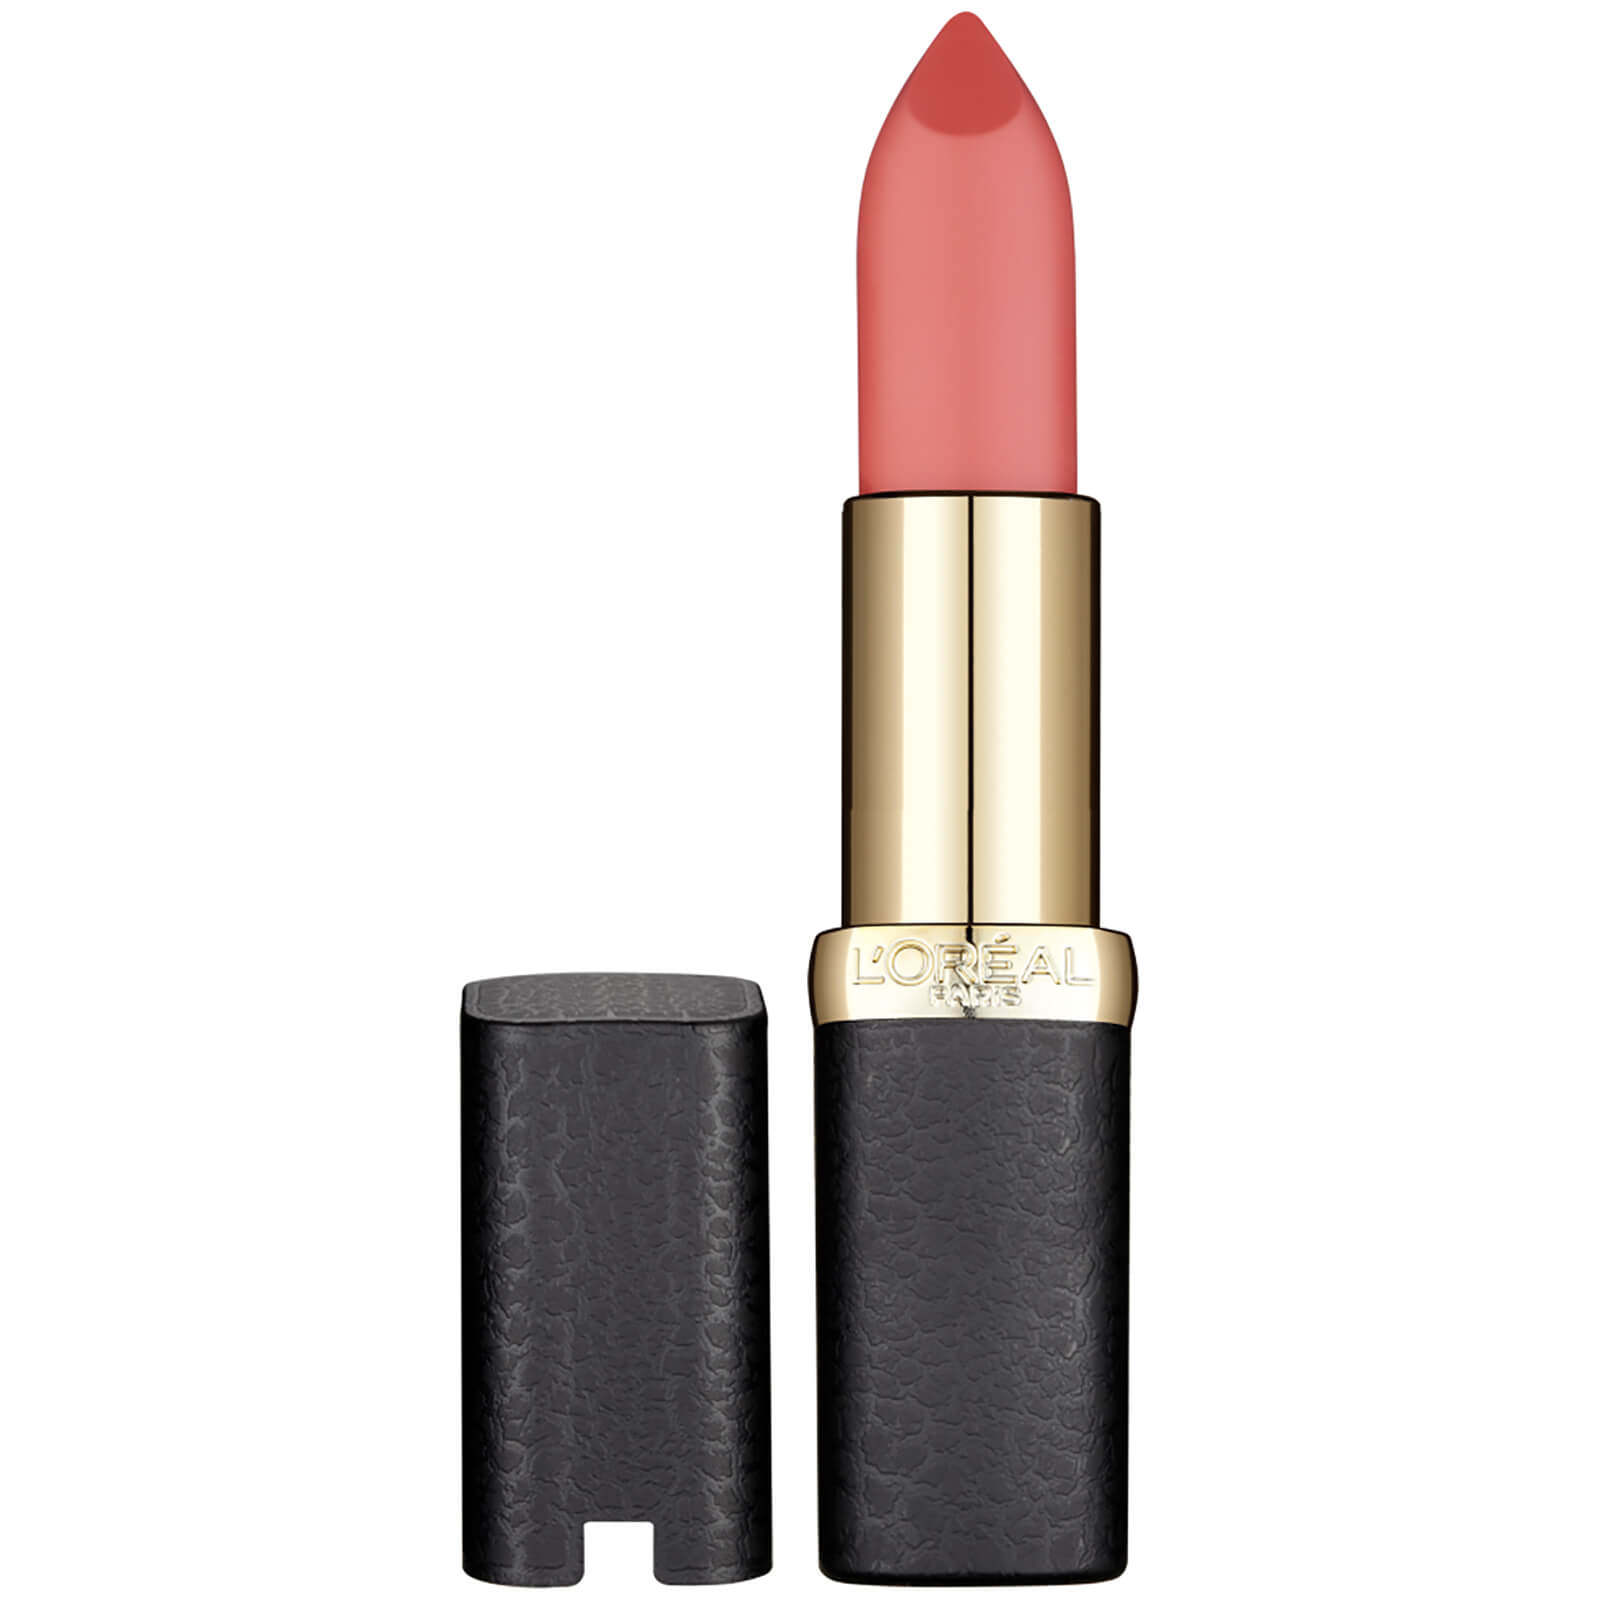 L'Oréal Paris Color Riche Matte Addiction Lipstick 4.8g (Various Shades) - 19 640 Erotique